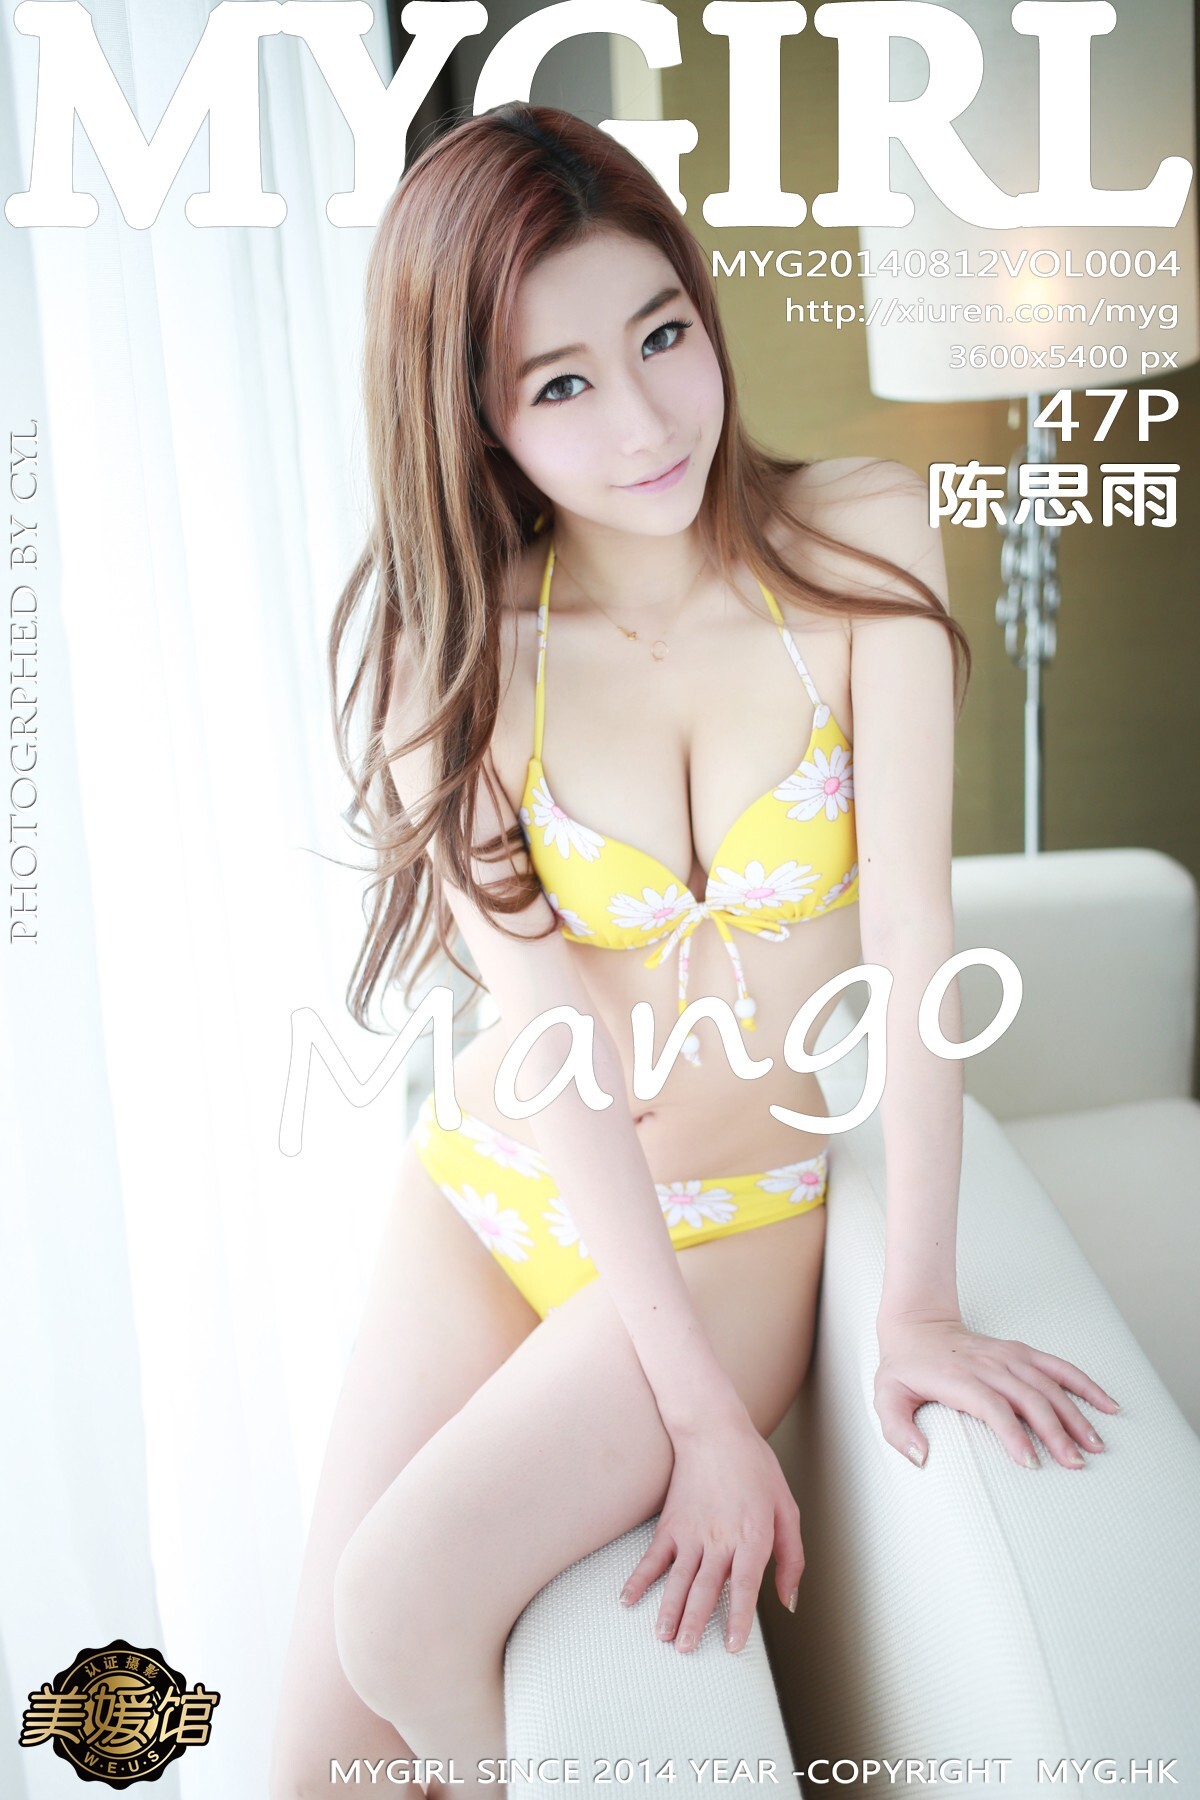 [mygirl Meiyuan Museum] new issue 2014.08.12 vol.004 Chen Siyu mango 1st